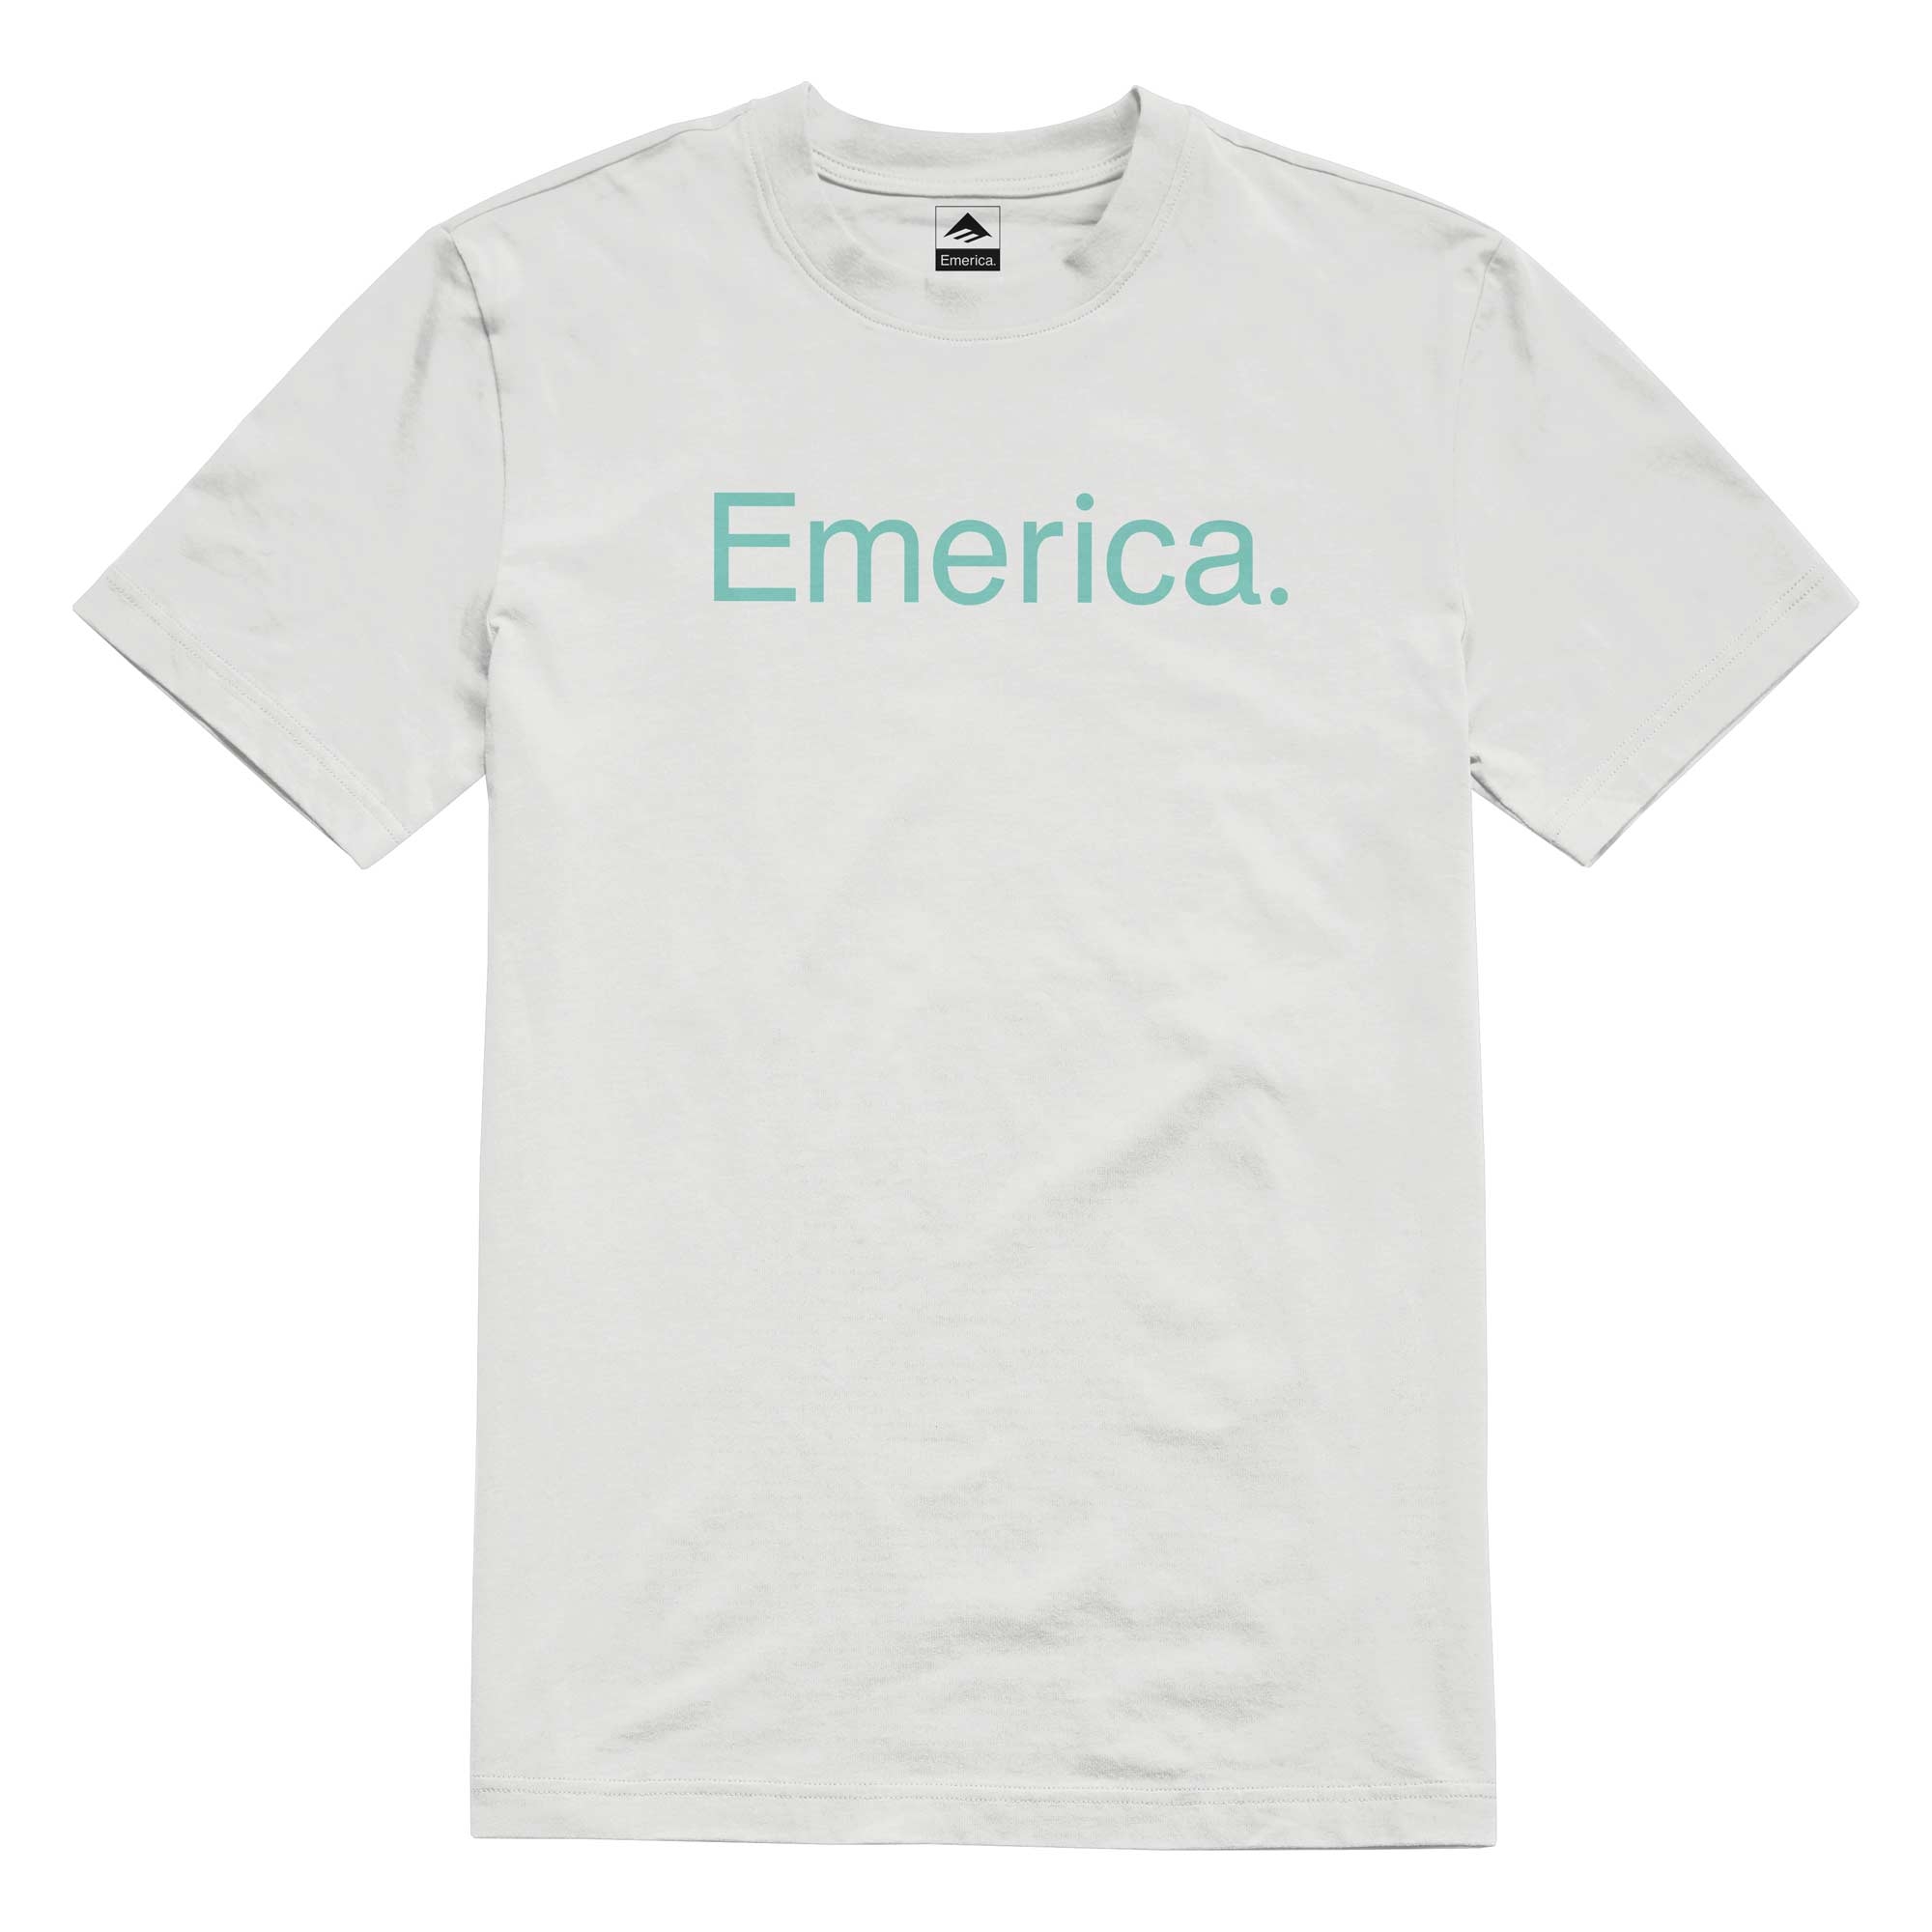 EMERICA T-Shirt PURE S/S white